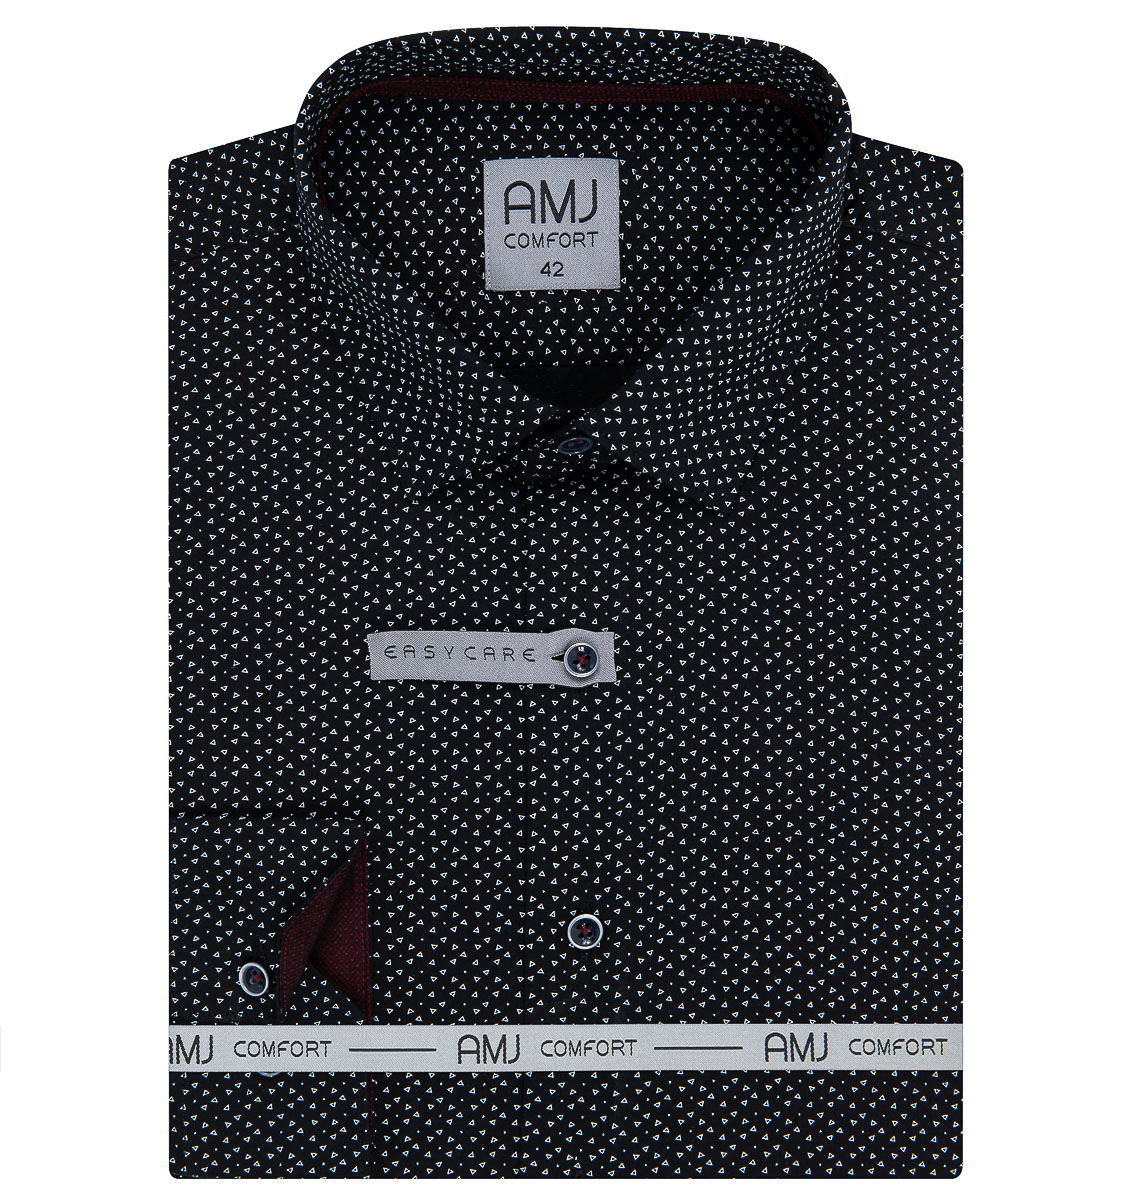 Pánská košile AMJ bavlněná, černá s trojúhelníčky VDBR1217, dlouhý rukáv (regular + prodloužený slim-fit)